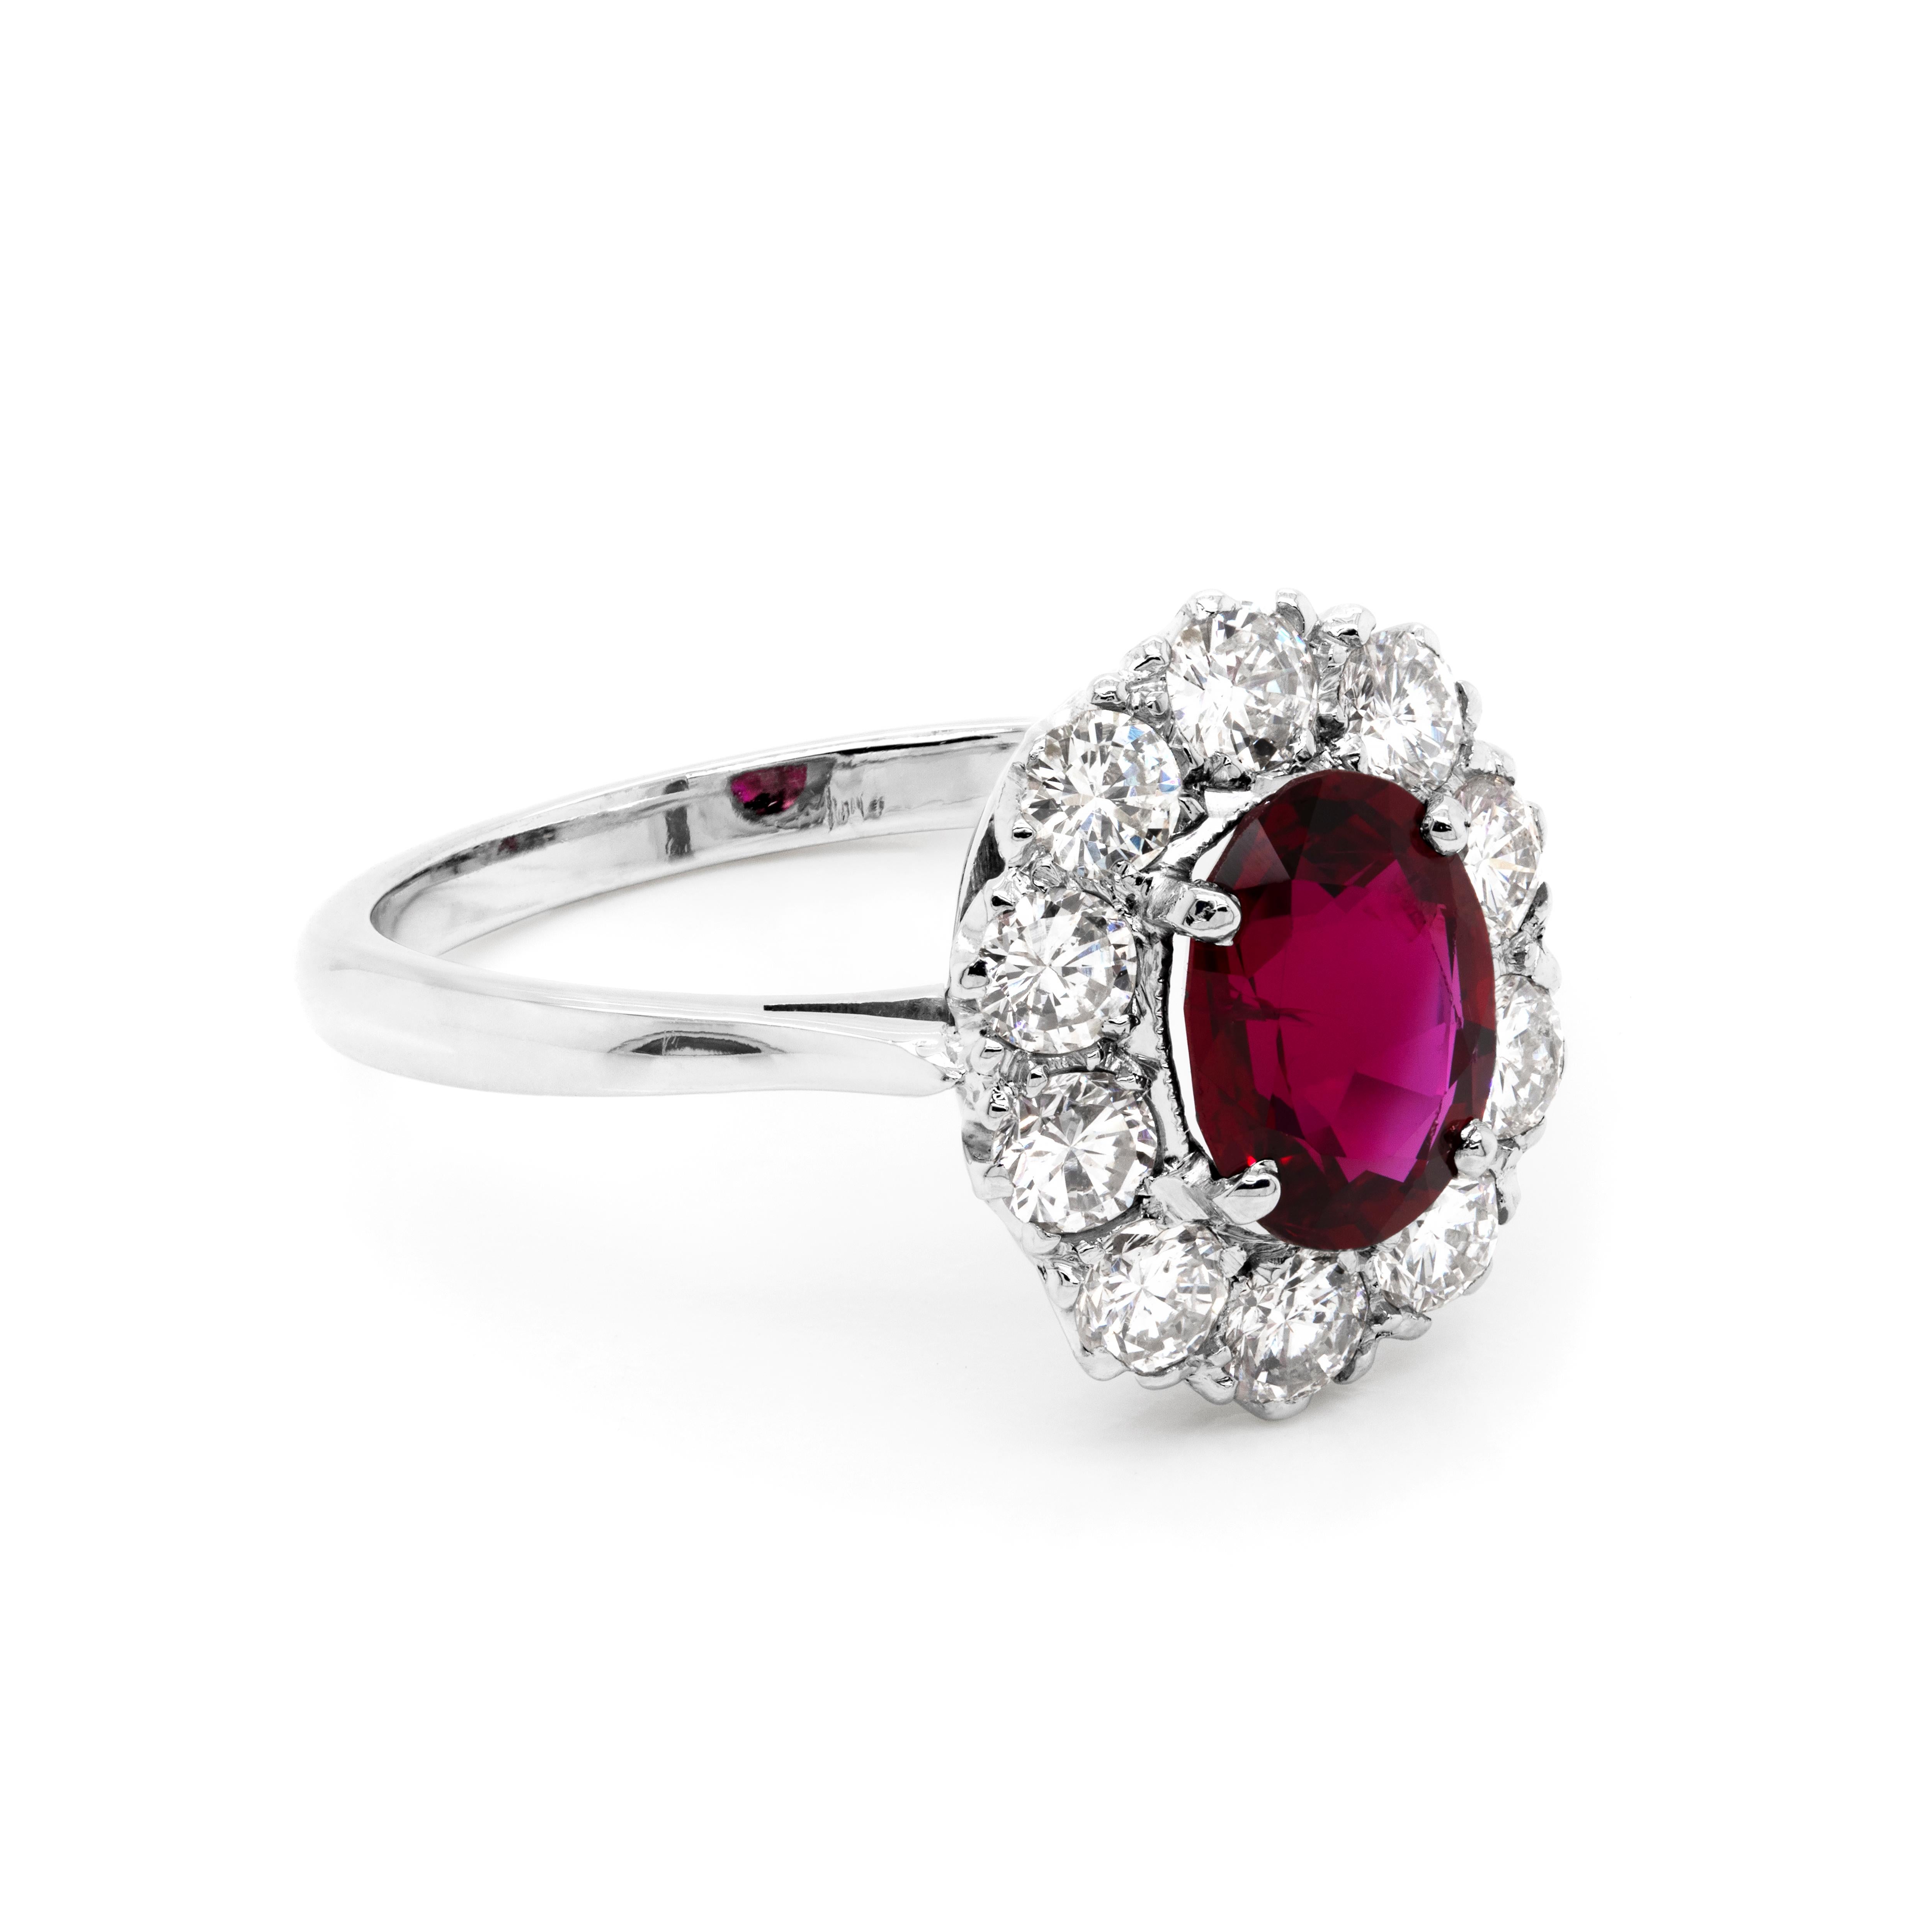 Schöner Verlobungsring mit einem ovalen roten Rubin von 1,44 ct., der in der Mitte von zehn runden Diamanten mit Brillantschliff und einem ungefähren Gesamtgewicht von 1,00 ct. gefasst ist. Die Steine sind wunderschön in ihre ursprüngliche